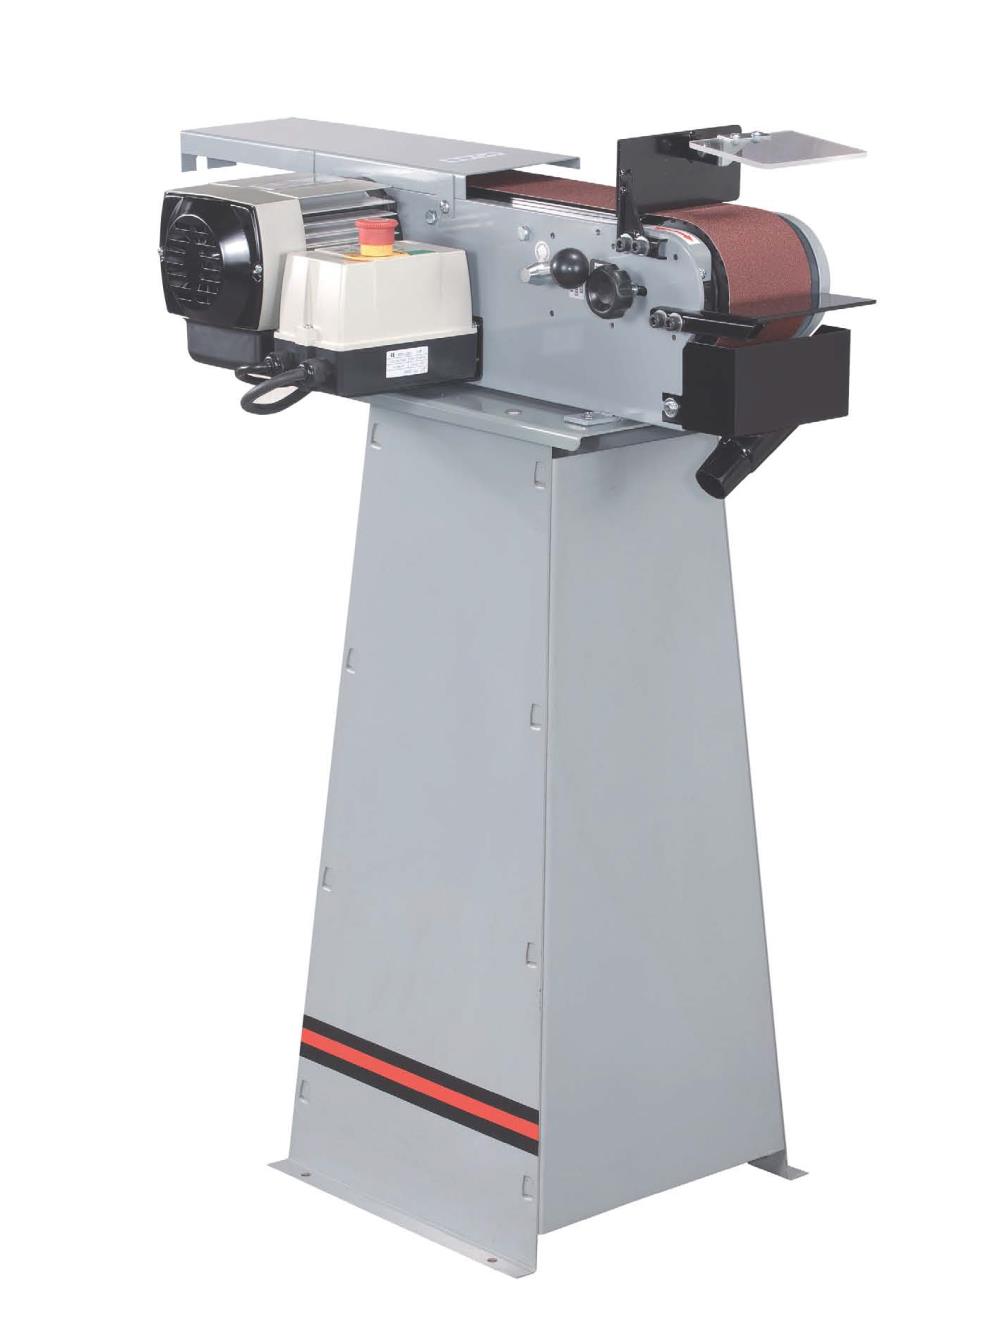 เครื่องขัดผ้าทราย แบบตั้งพื้น (Belt Sander Machine),เครื่องขัดผ้าทราย,เครื่องขัด,belt sander,sander,Belt Sander Machine,เครื่องขัดกระดาษทราย,ChongFu,Tool and Tooling/Electric Power Tools/Belt Sanders